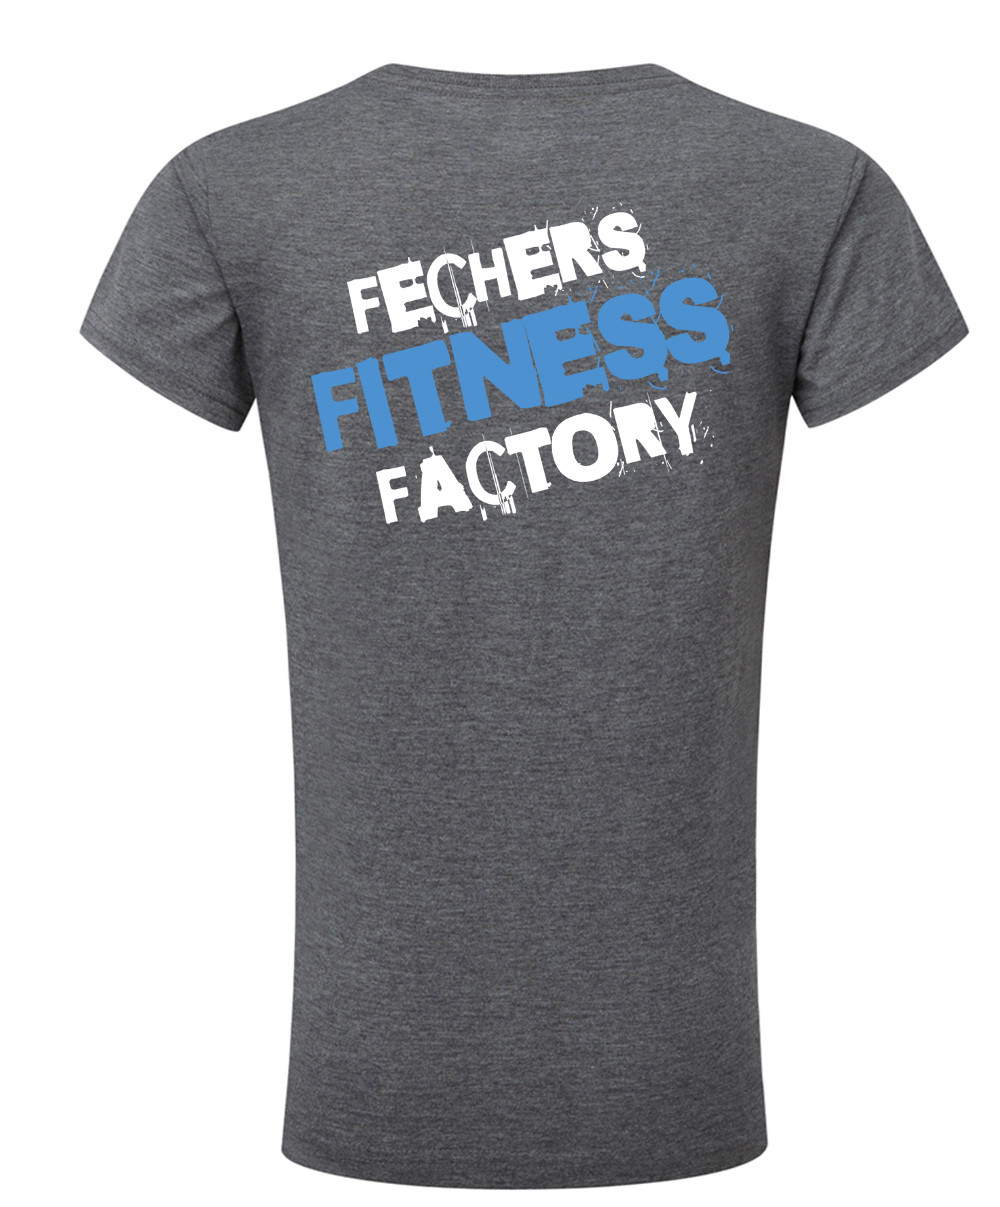 Fechers Fitness Factory T-Shirt V Neck Damen